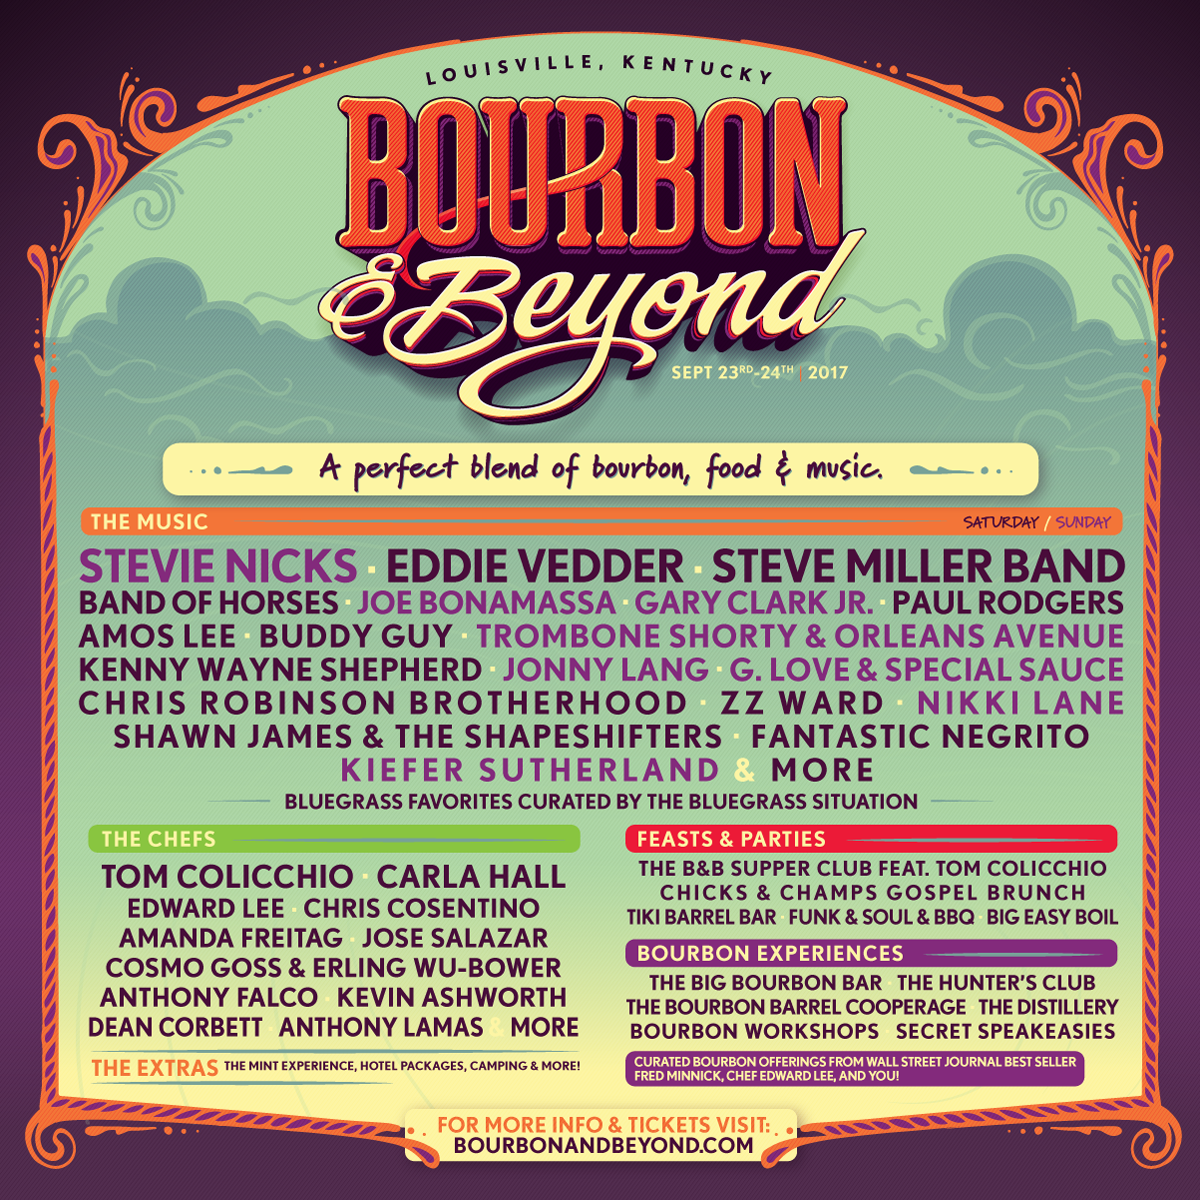 Bourbon & Beyond Bourbon, Food &Music Festival Louisville, Kentucky